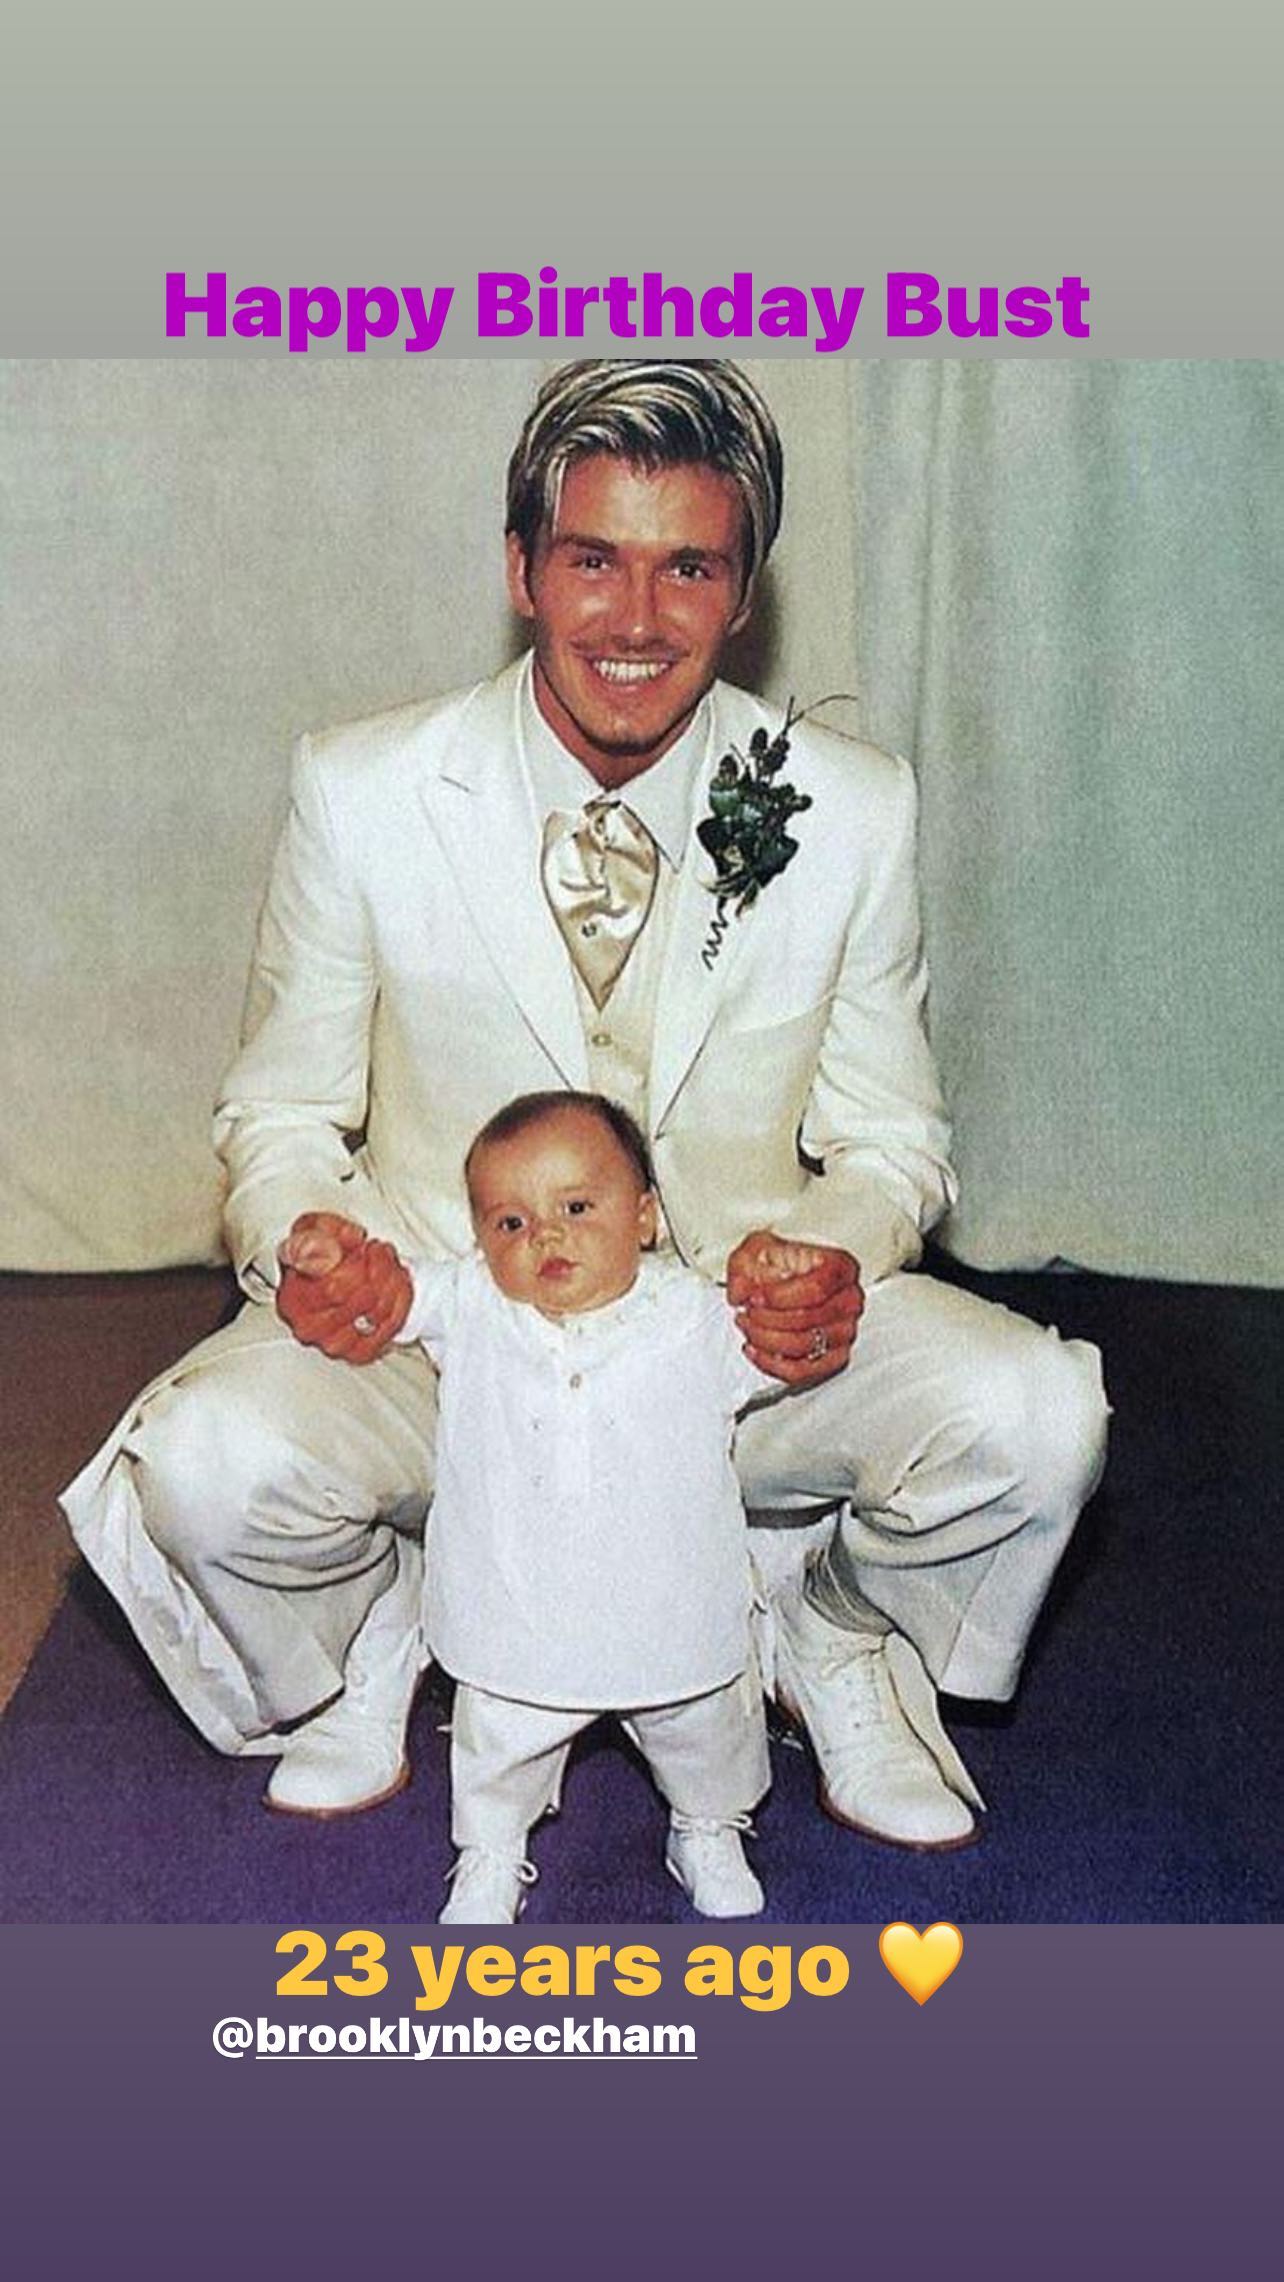 Hình ảnh hậu trường của David Beckham và con trai trong 'đám cưới thế kỷ' hơn 2 thập kỷ trước